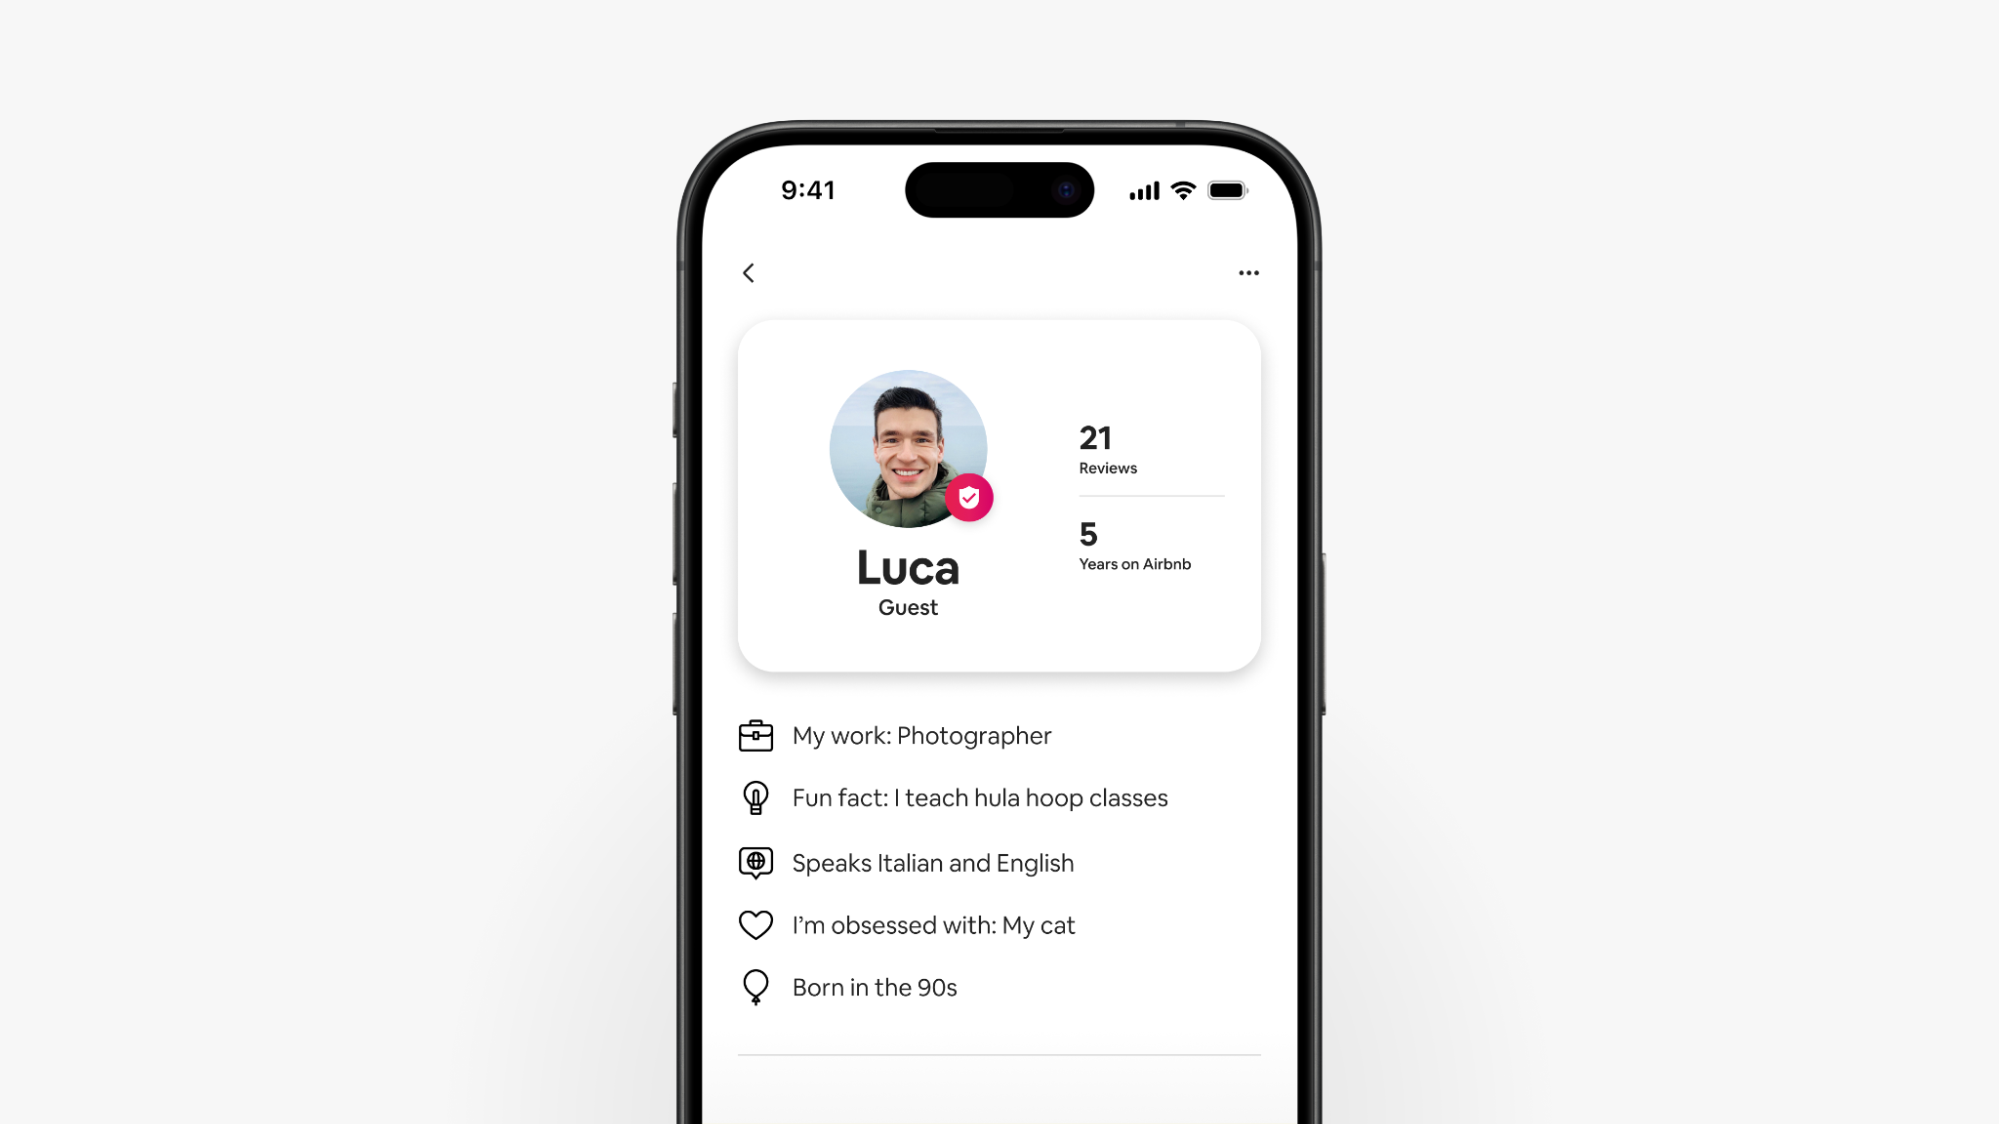 Na zrzucie ekranu ze smartfonu widać ulepszony profil gościa Airbnb o imieniu Luca z recenzjami i innymi szczegółami na jego temat.